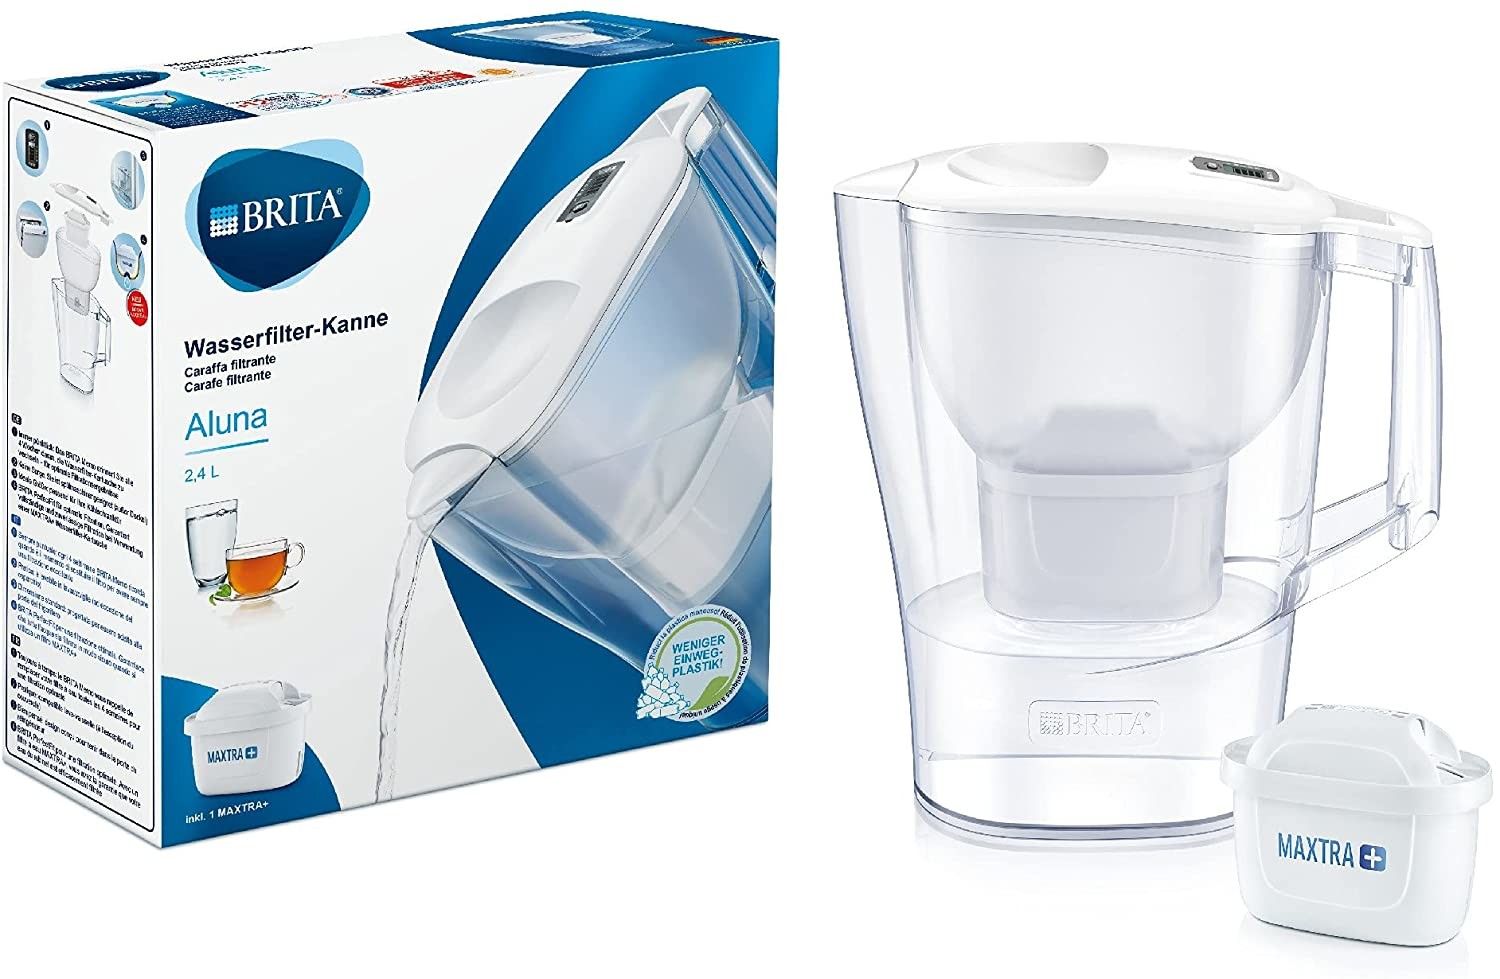 Brita Aluna - Caraffa Filtrante per Acqua, 2.4 Litri, 1 Filtro Maxtra+ Incluso, Essential